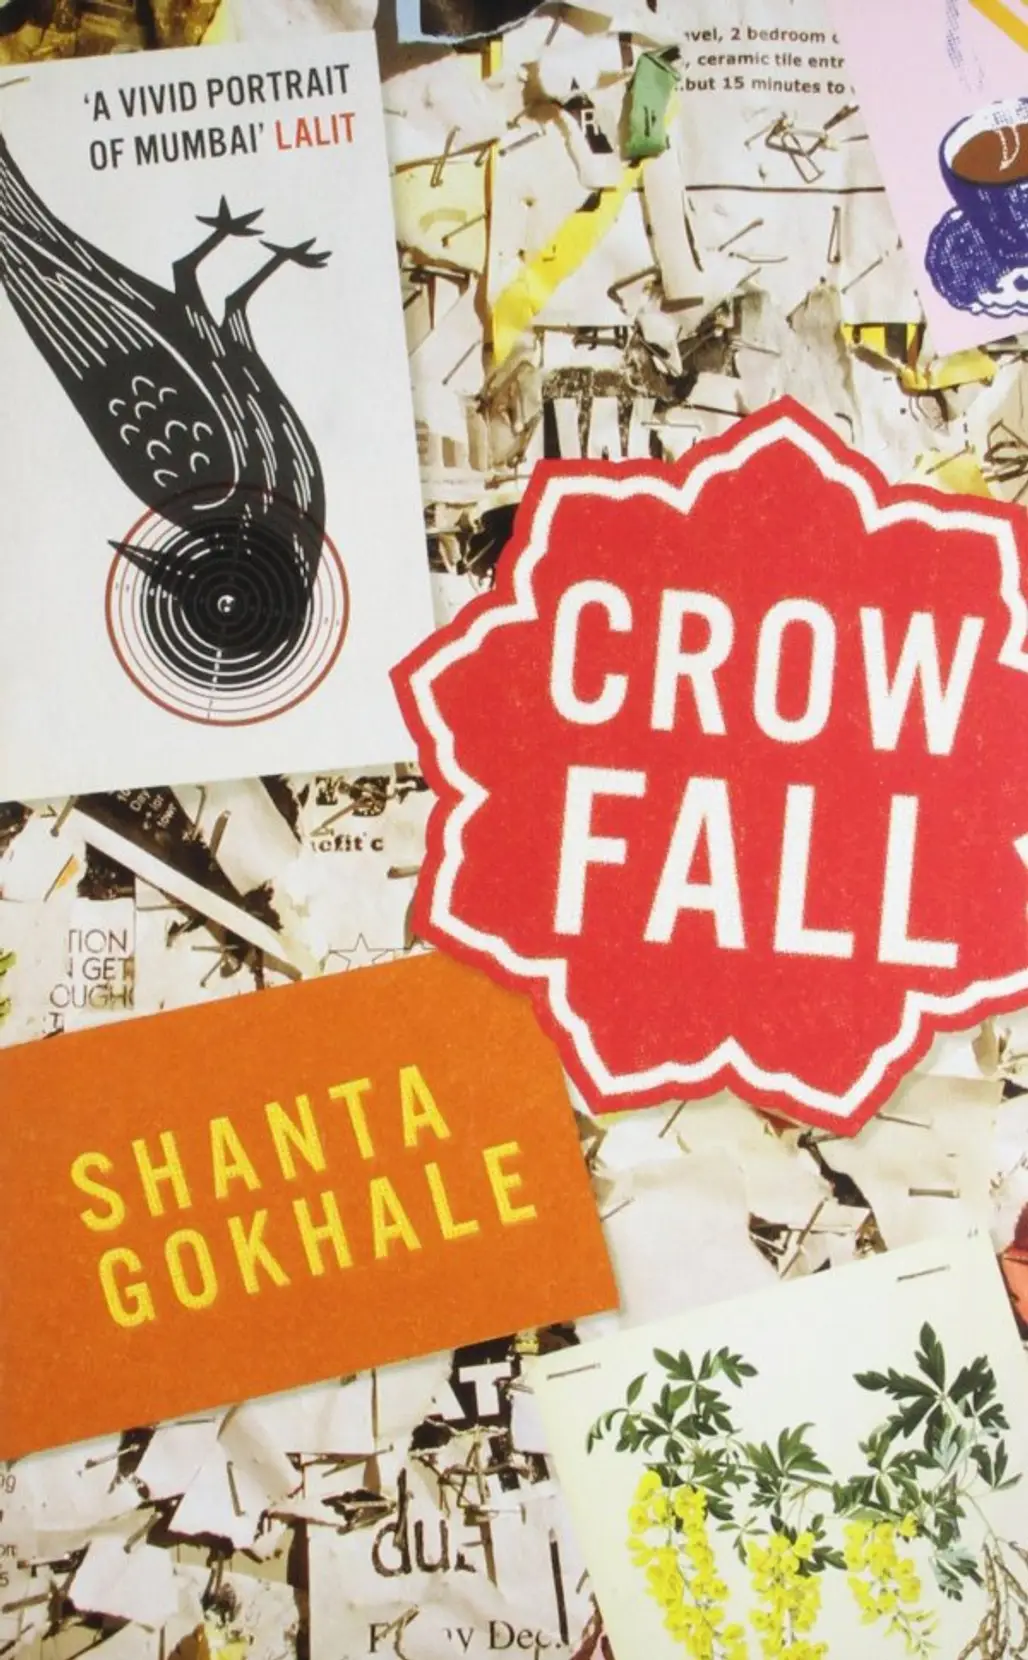 Crowfall by Shanta Gokhale